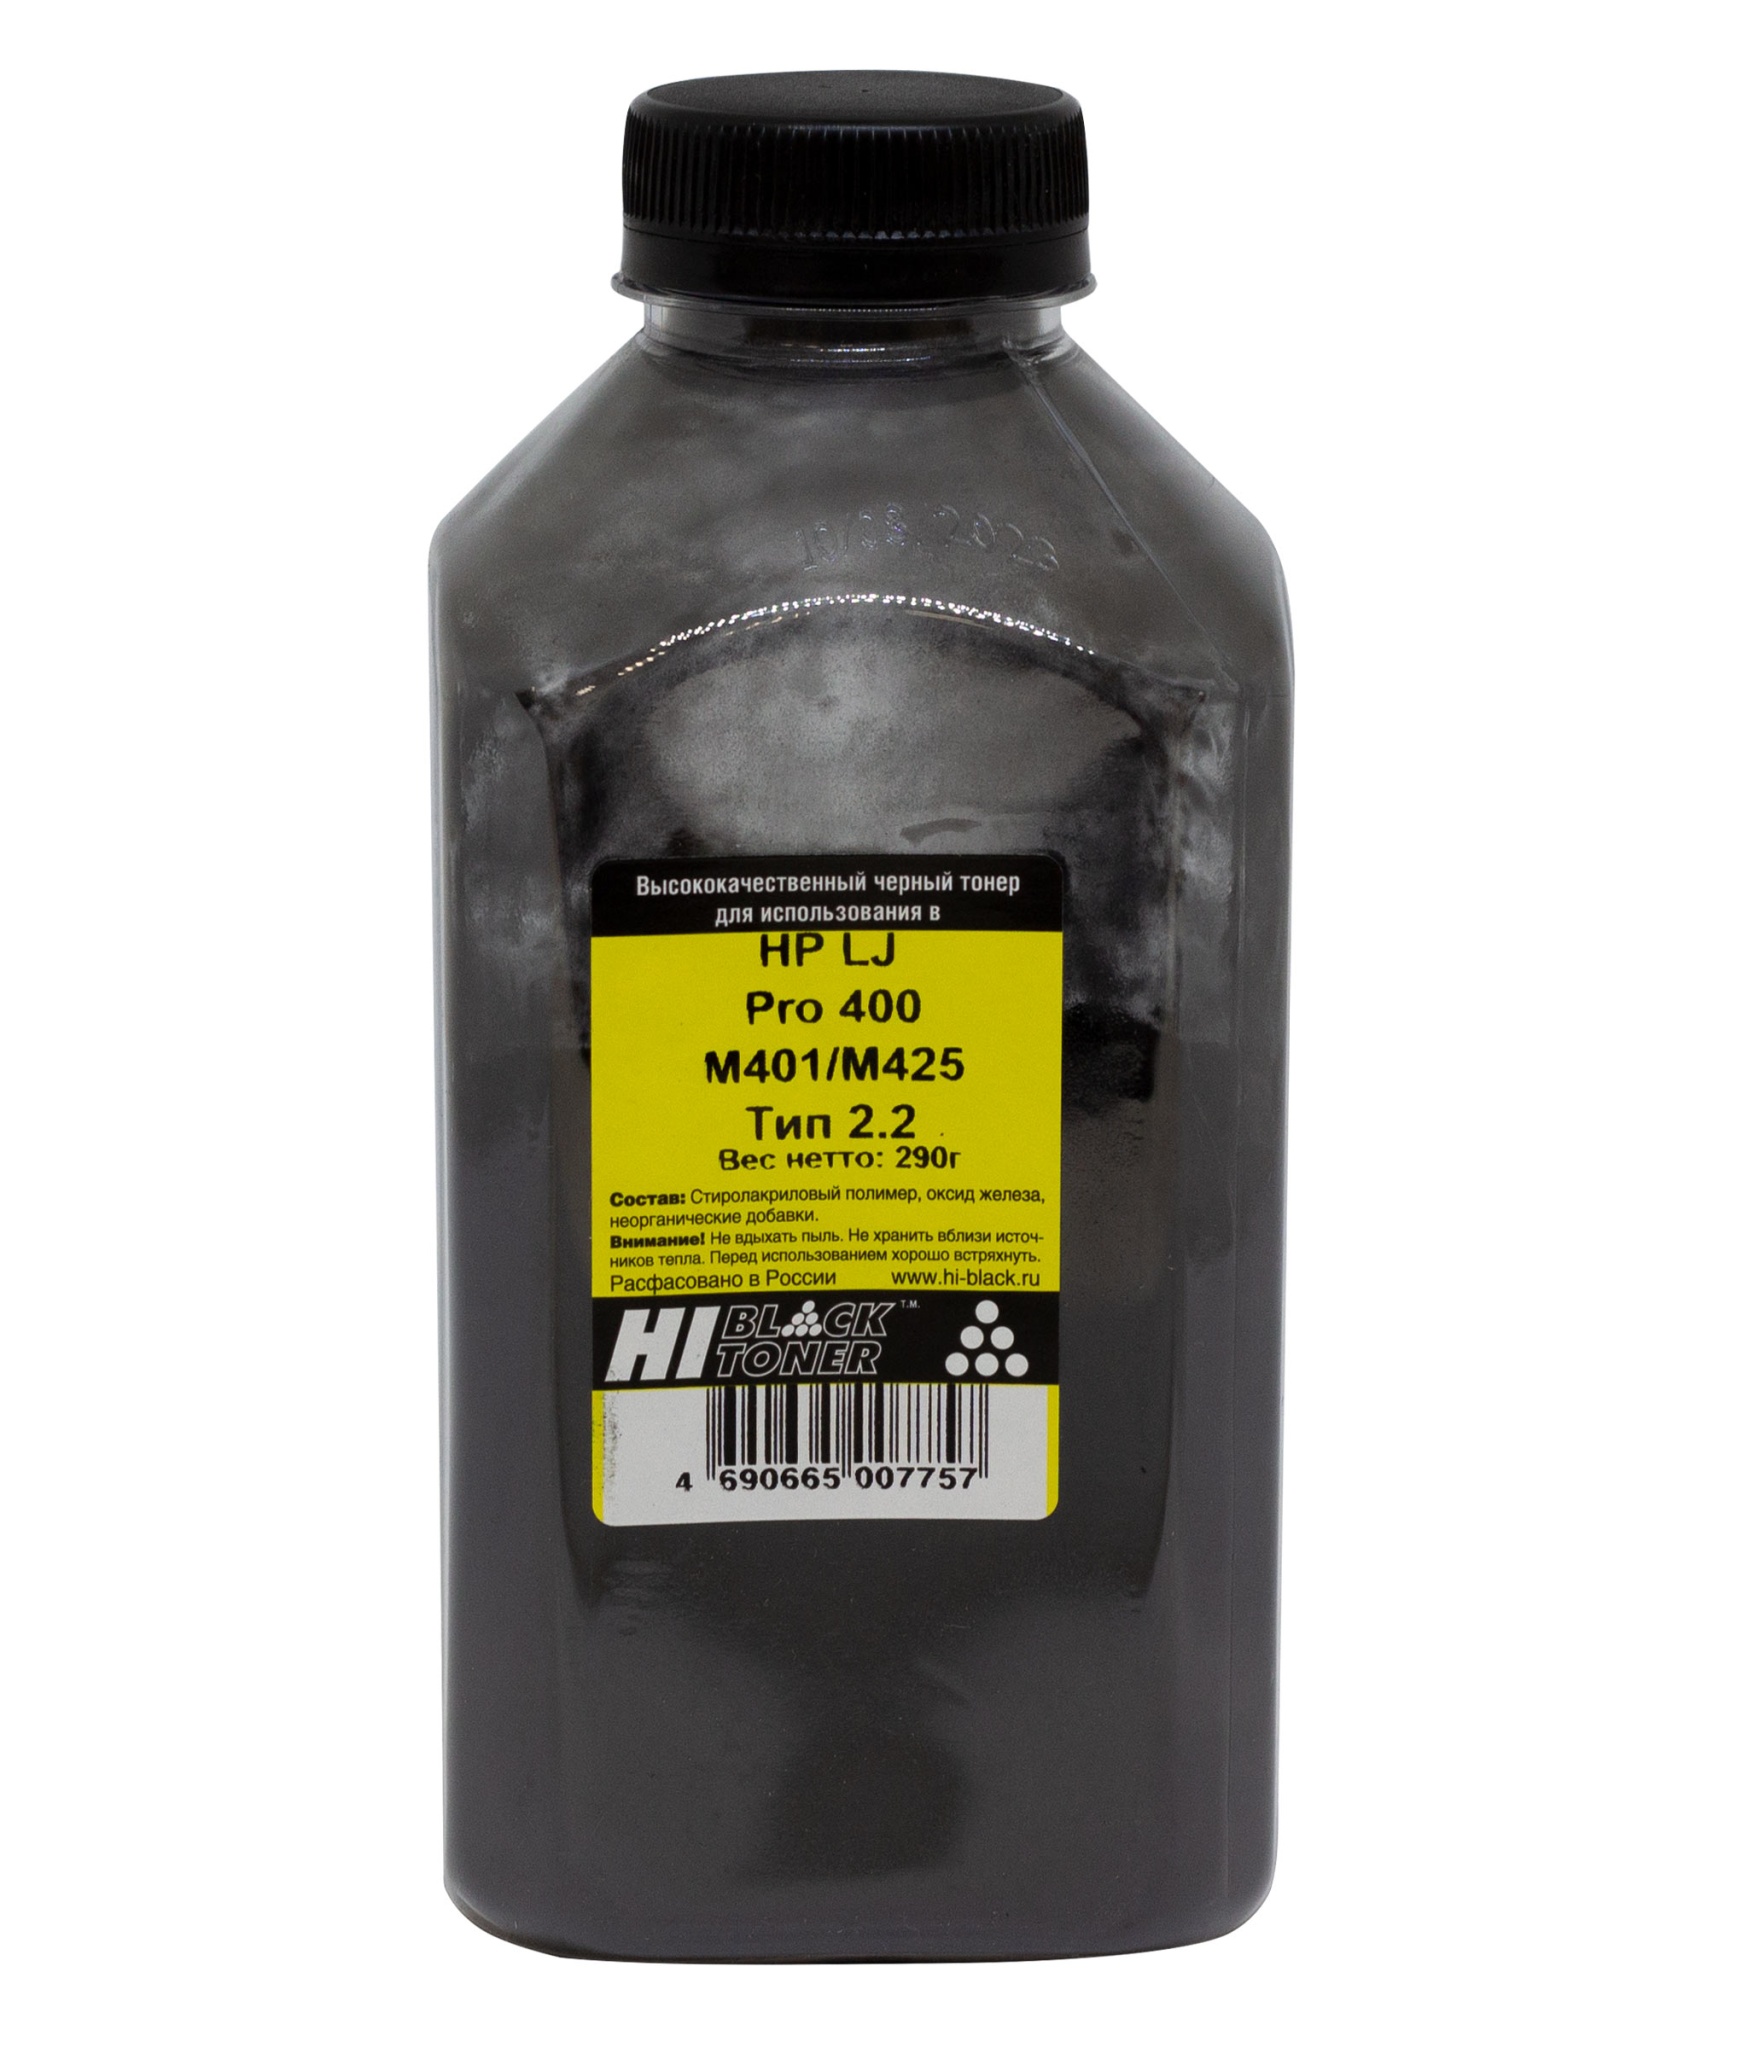 Тонер Hi-Black (CF280A) для HP LJ Pro 400 M401/ M425, Тип 2.2, чёрный (290 гр.)